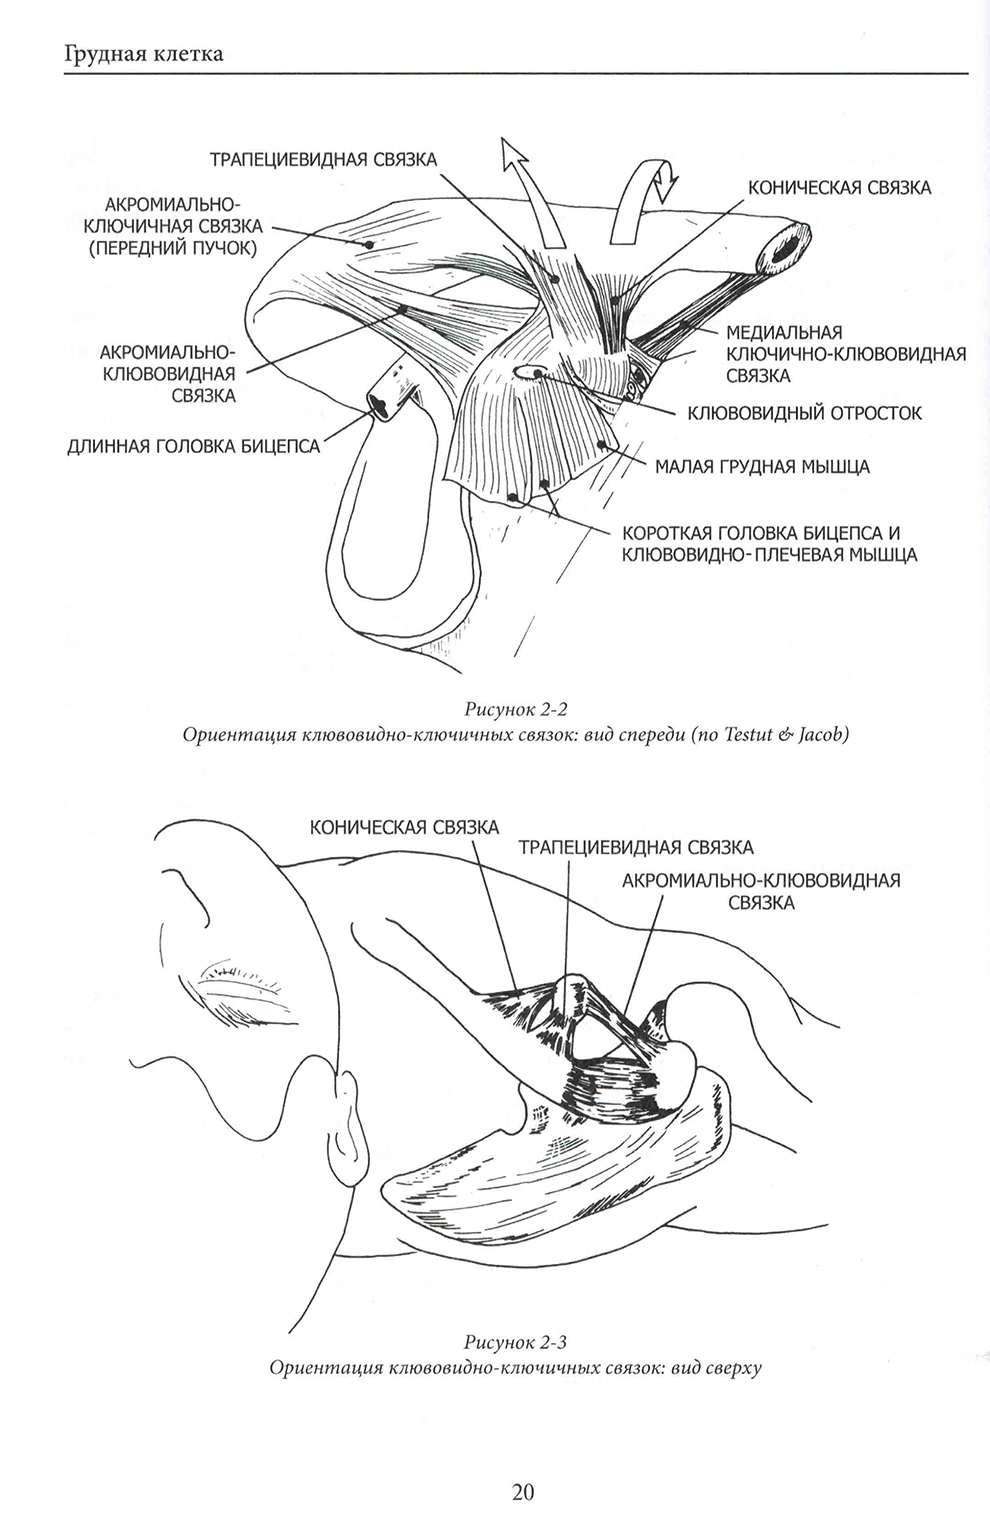 Ориентация клювовидно-ключичных связок: вид спереди